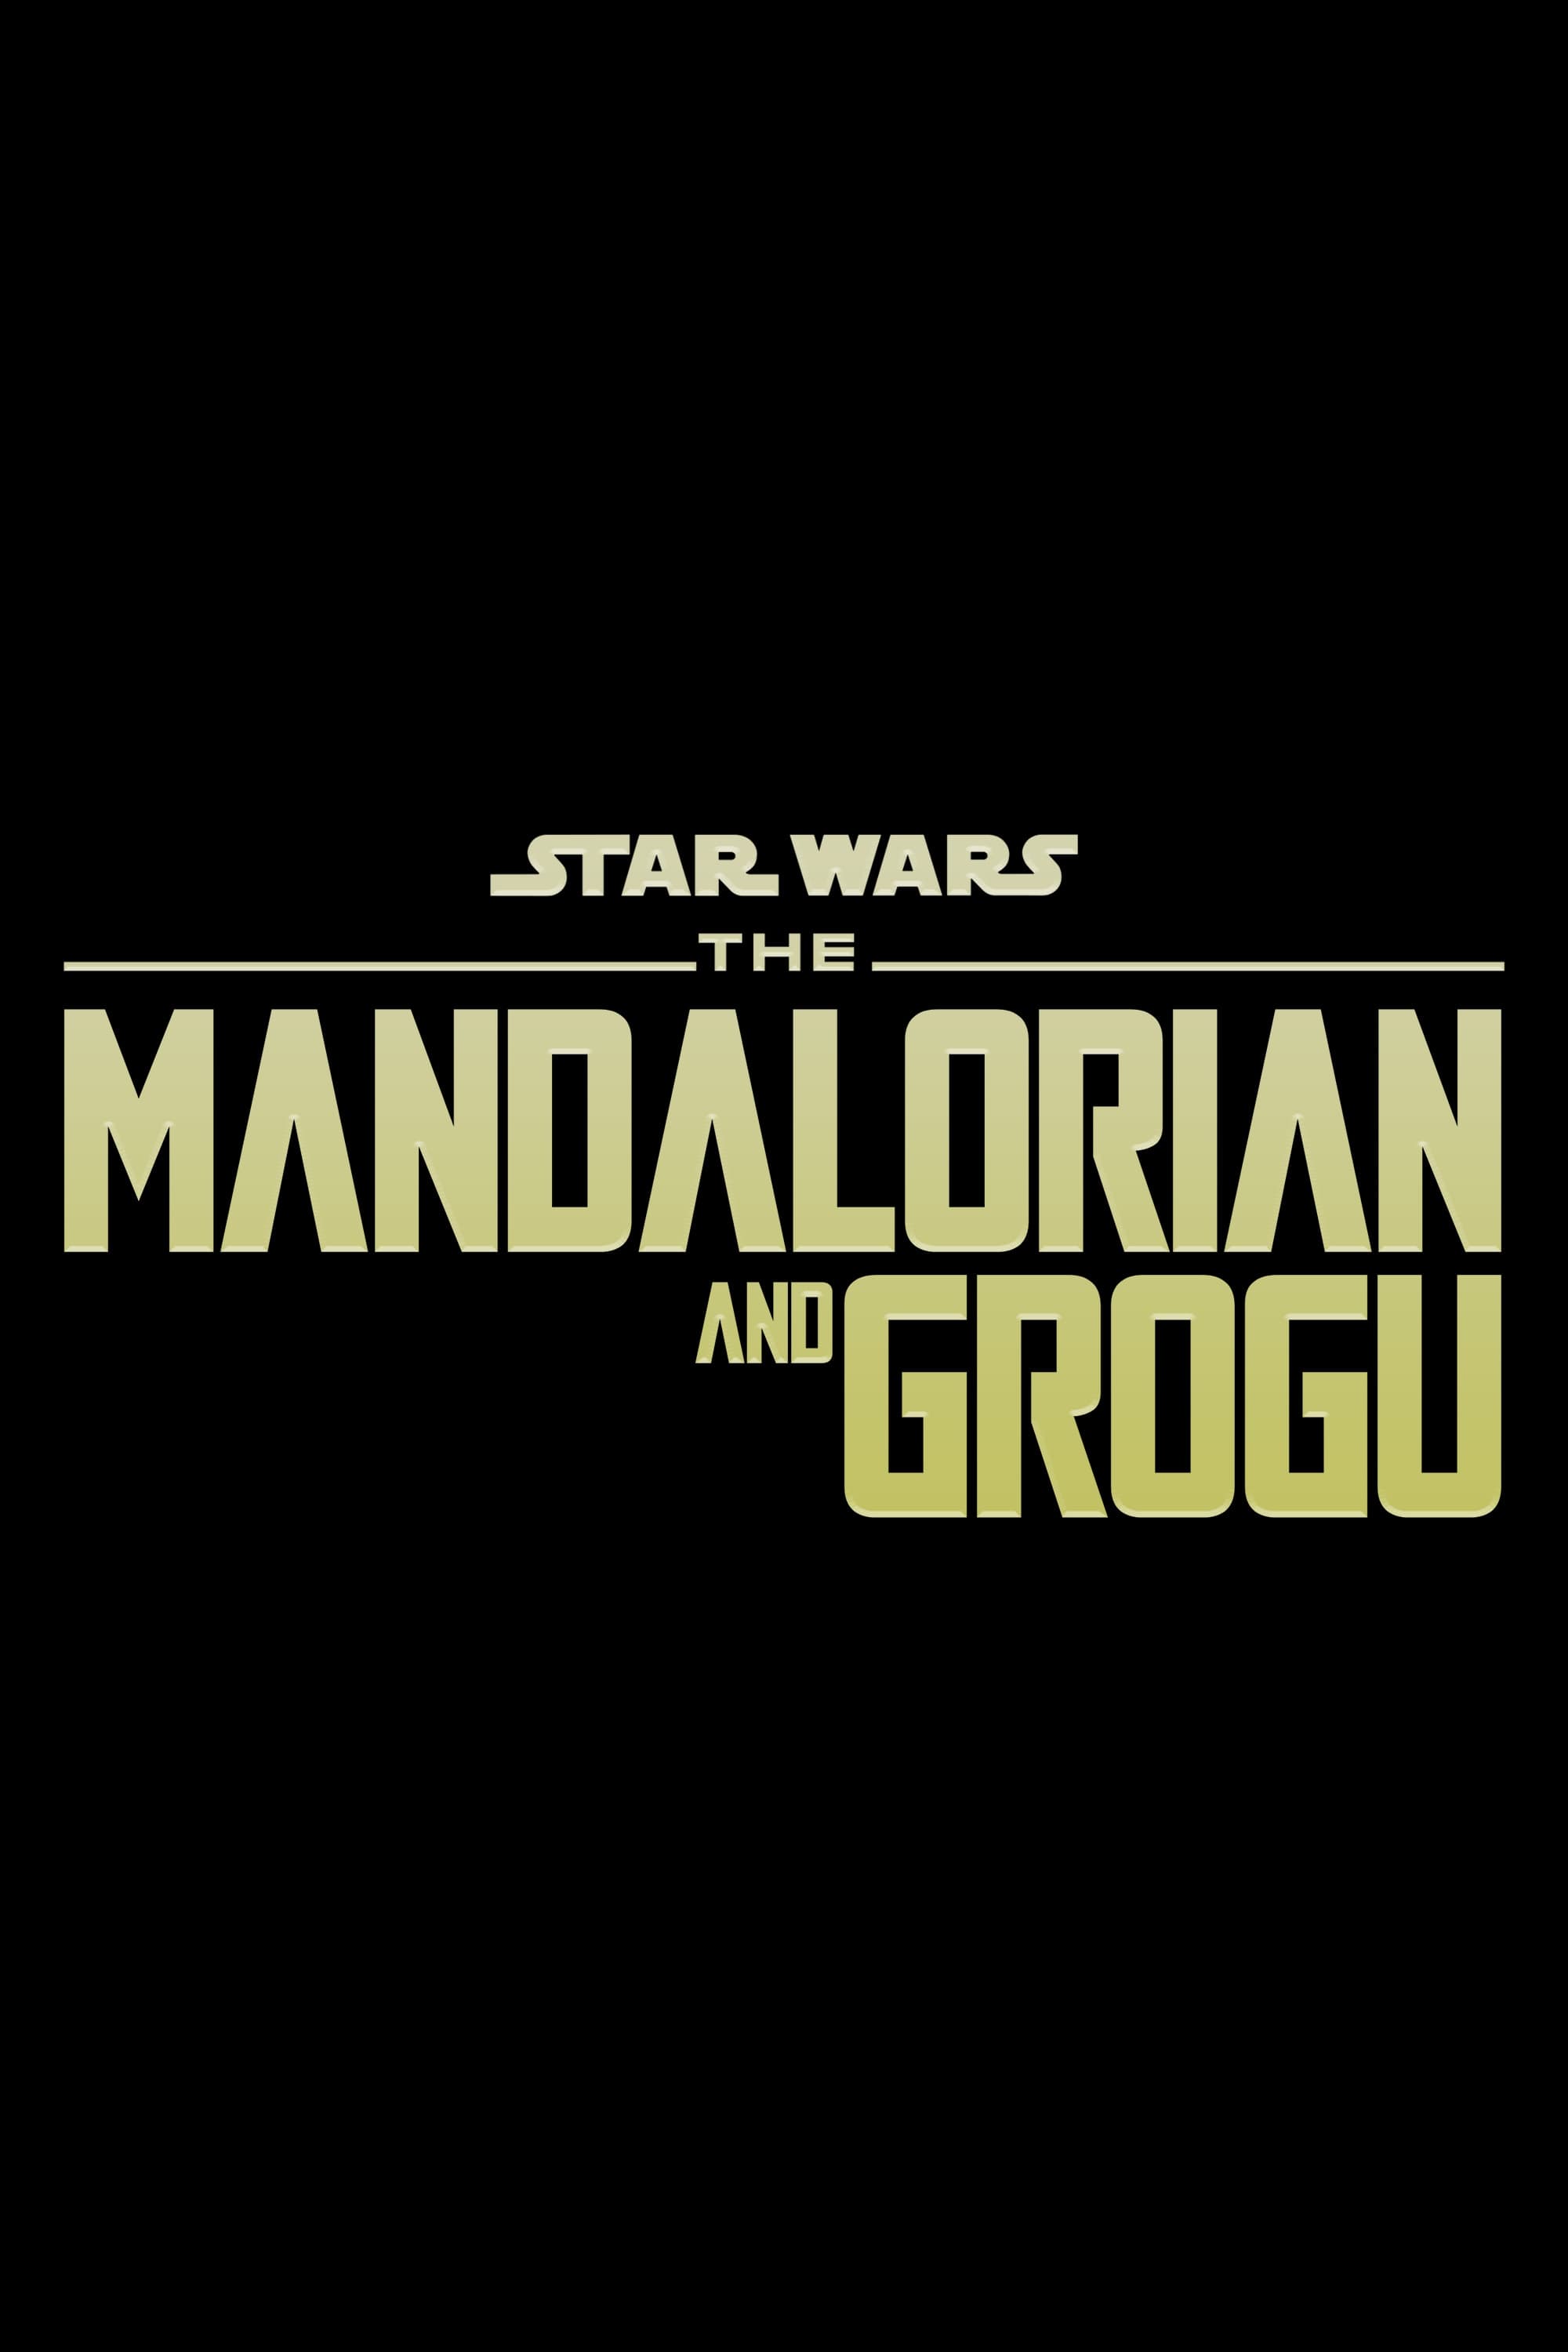 The Mandalorian & Grogu film